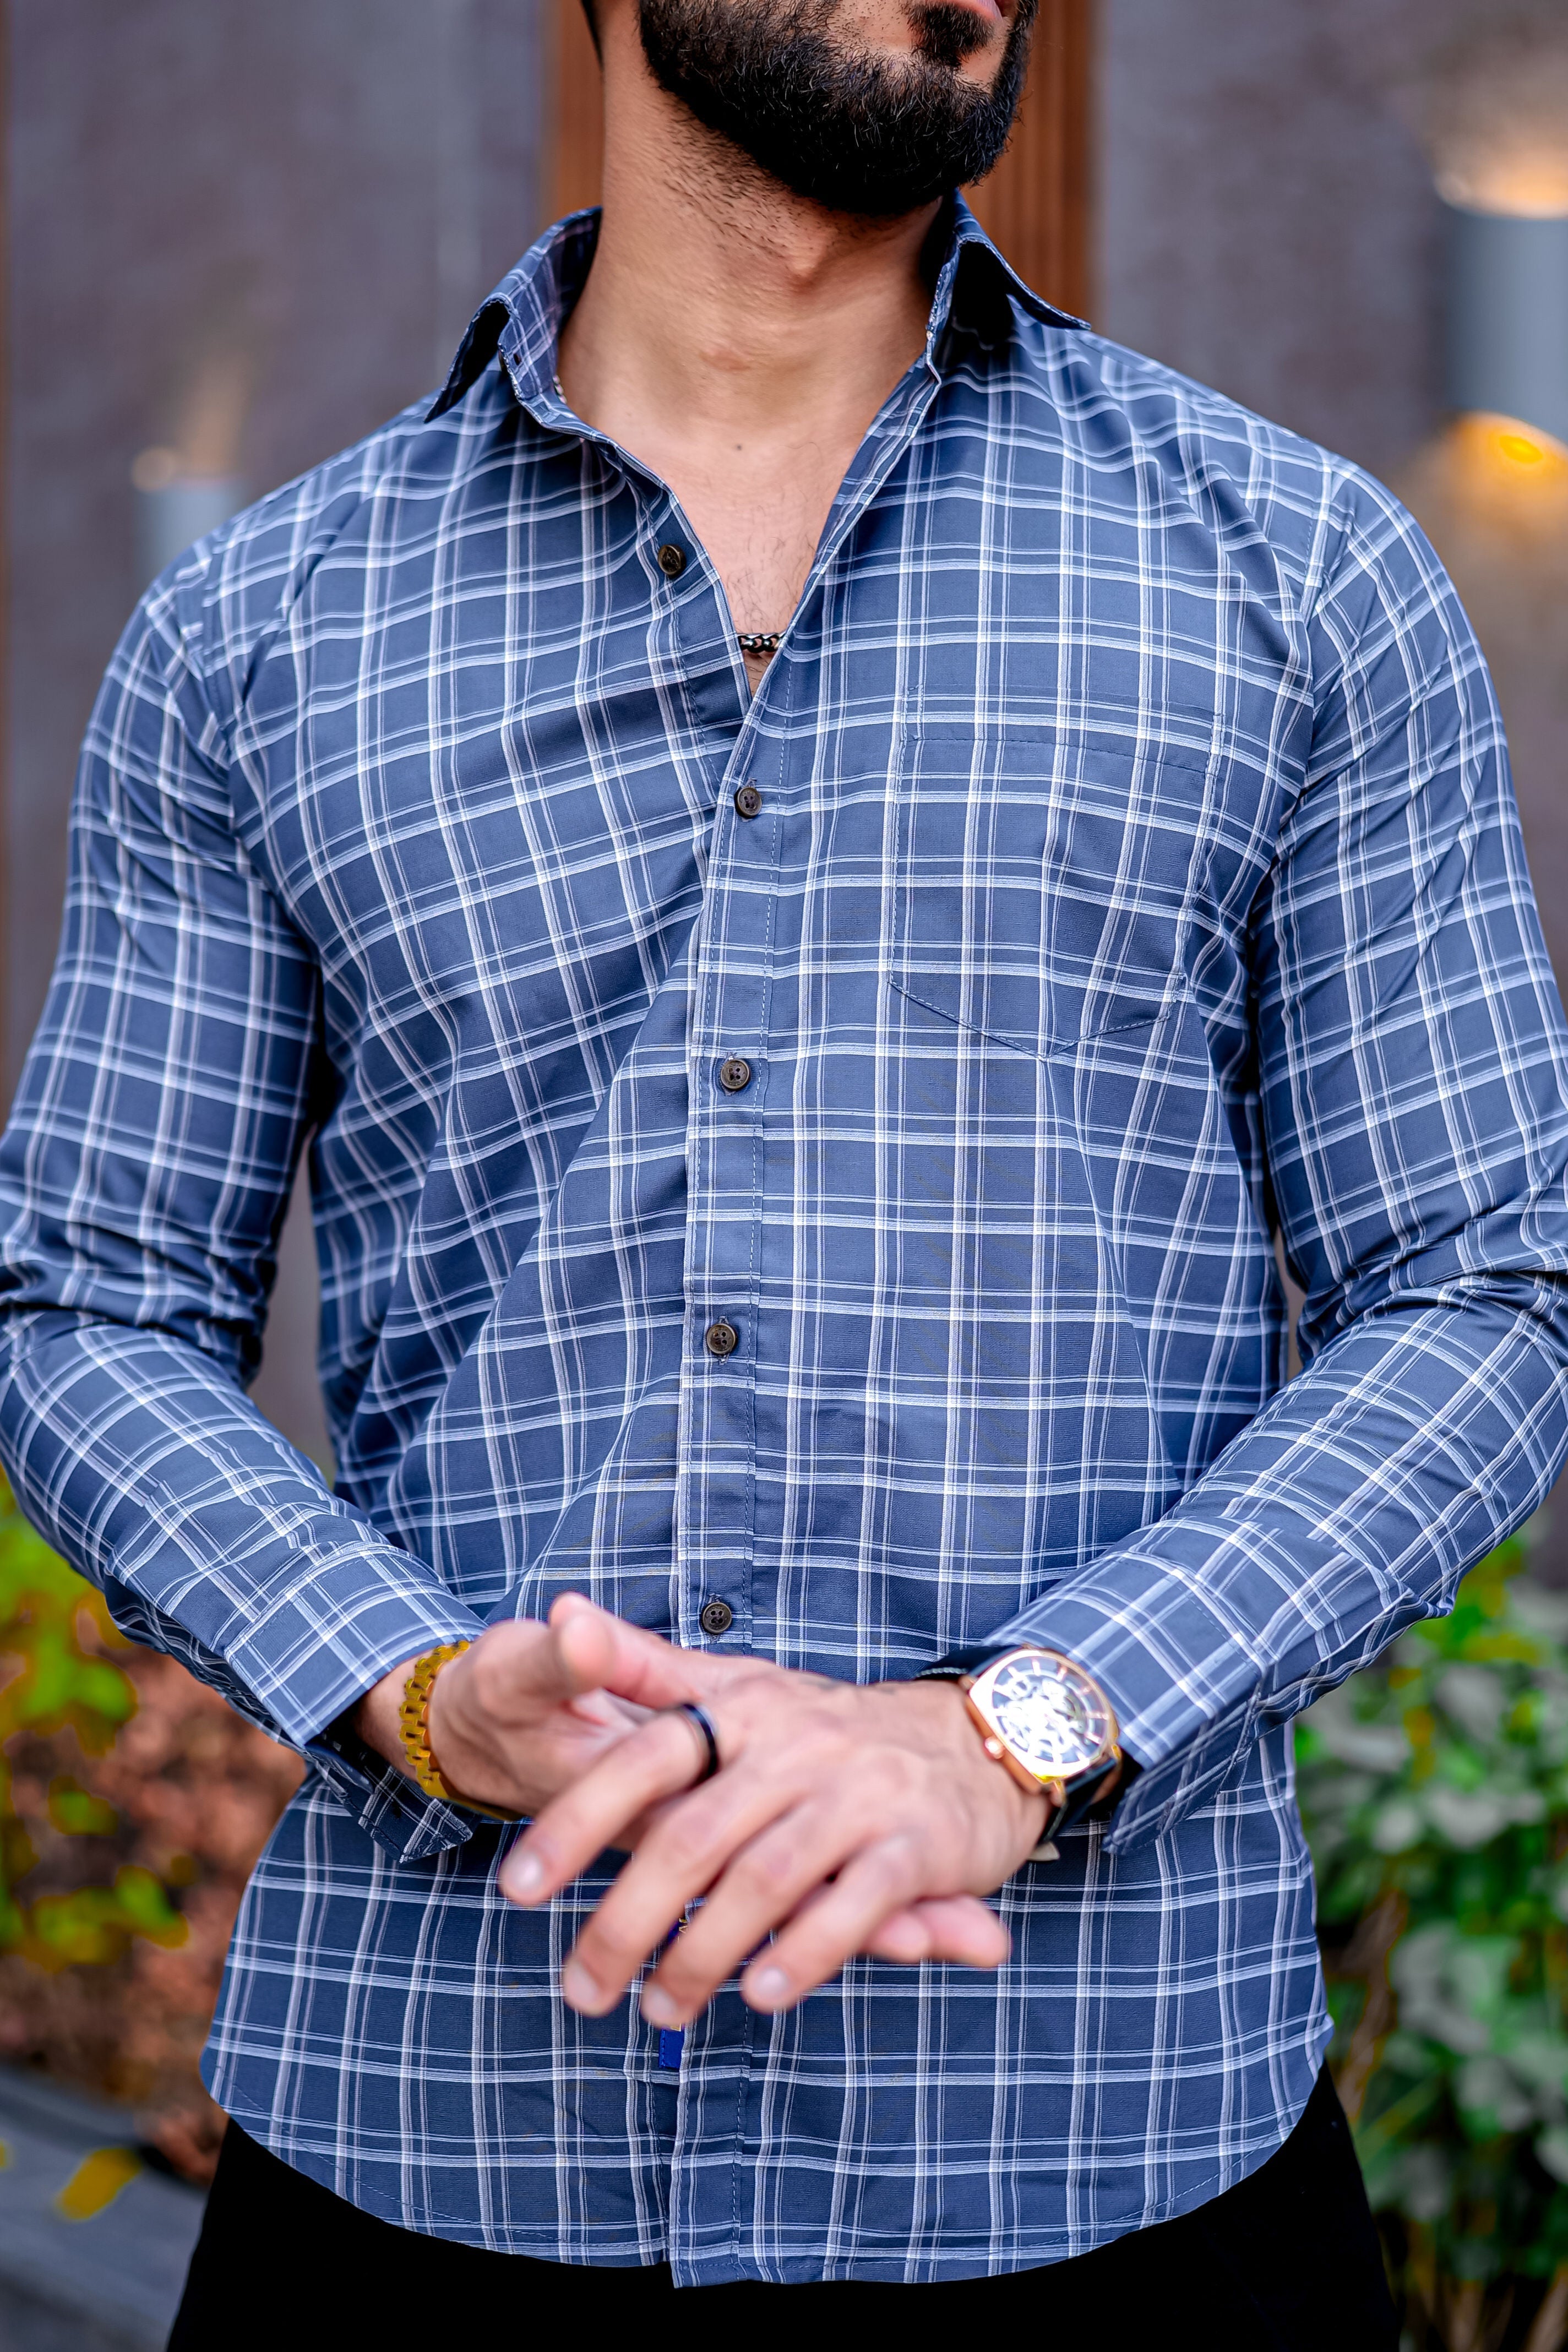 a man with a beard wearing a blue checkered shirt